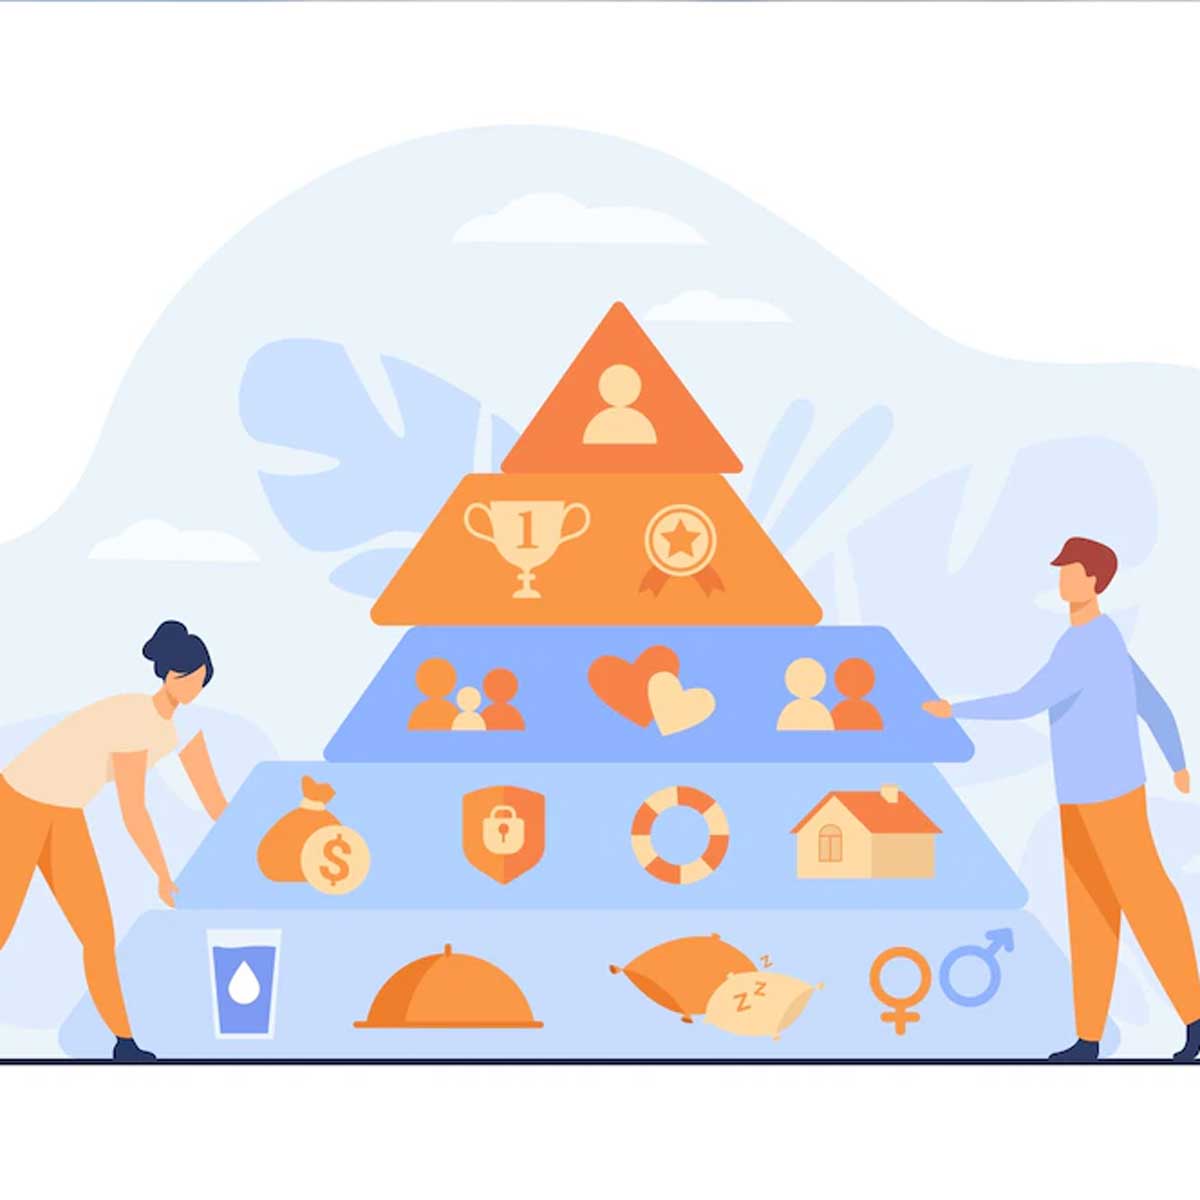 La pirámide de Maslow jerarquiza las necesidades humanas.